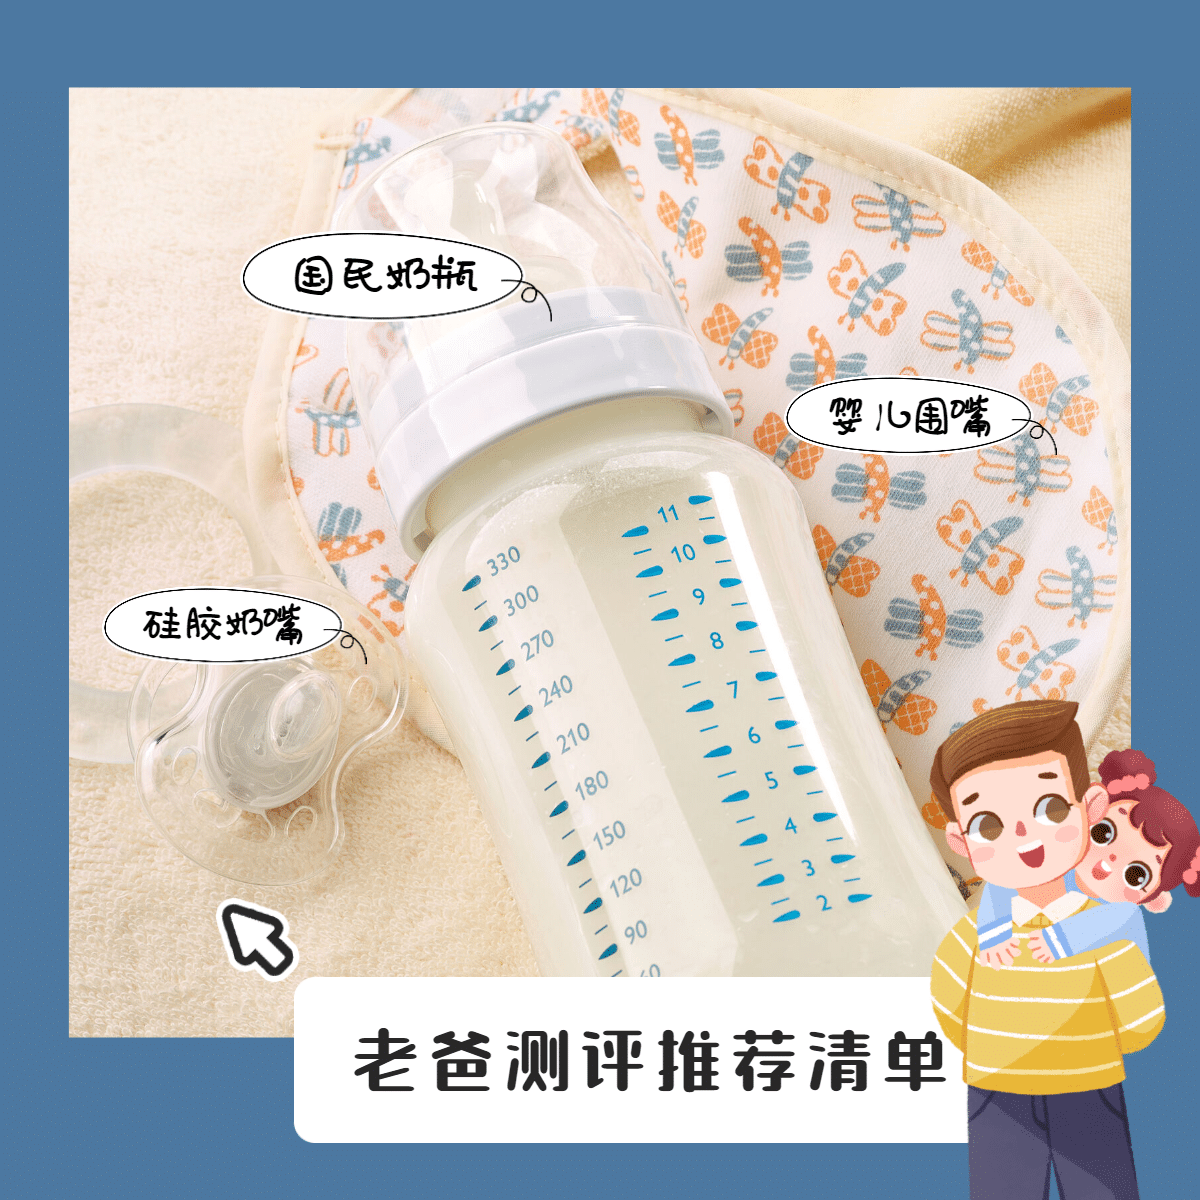 图片标记模版-晒图标记类-母婴产品预览效果